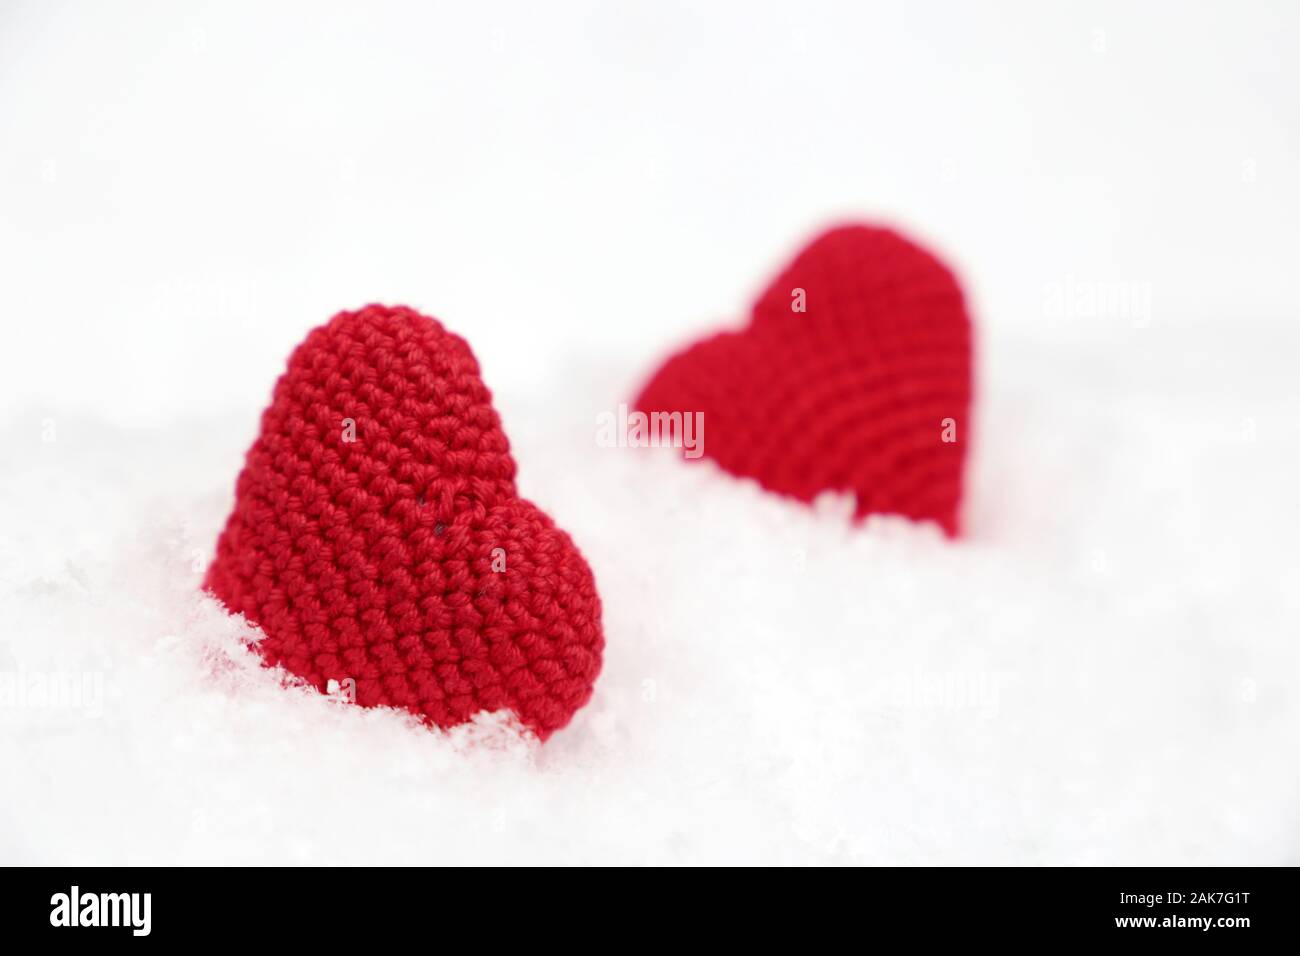 Liebe Herz, Valentinstag Karte, zwei Rote gestrickt Symbole der Leidenschaft in den Schnee. Hintergrund für romantische Veranstaltung, Feier oder Winter Wetter Stockfoto